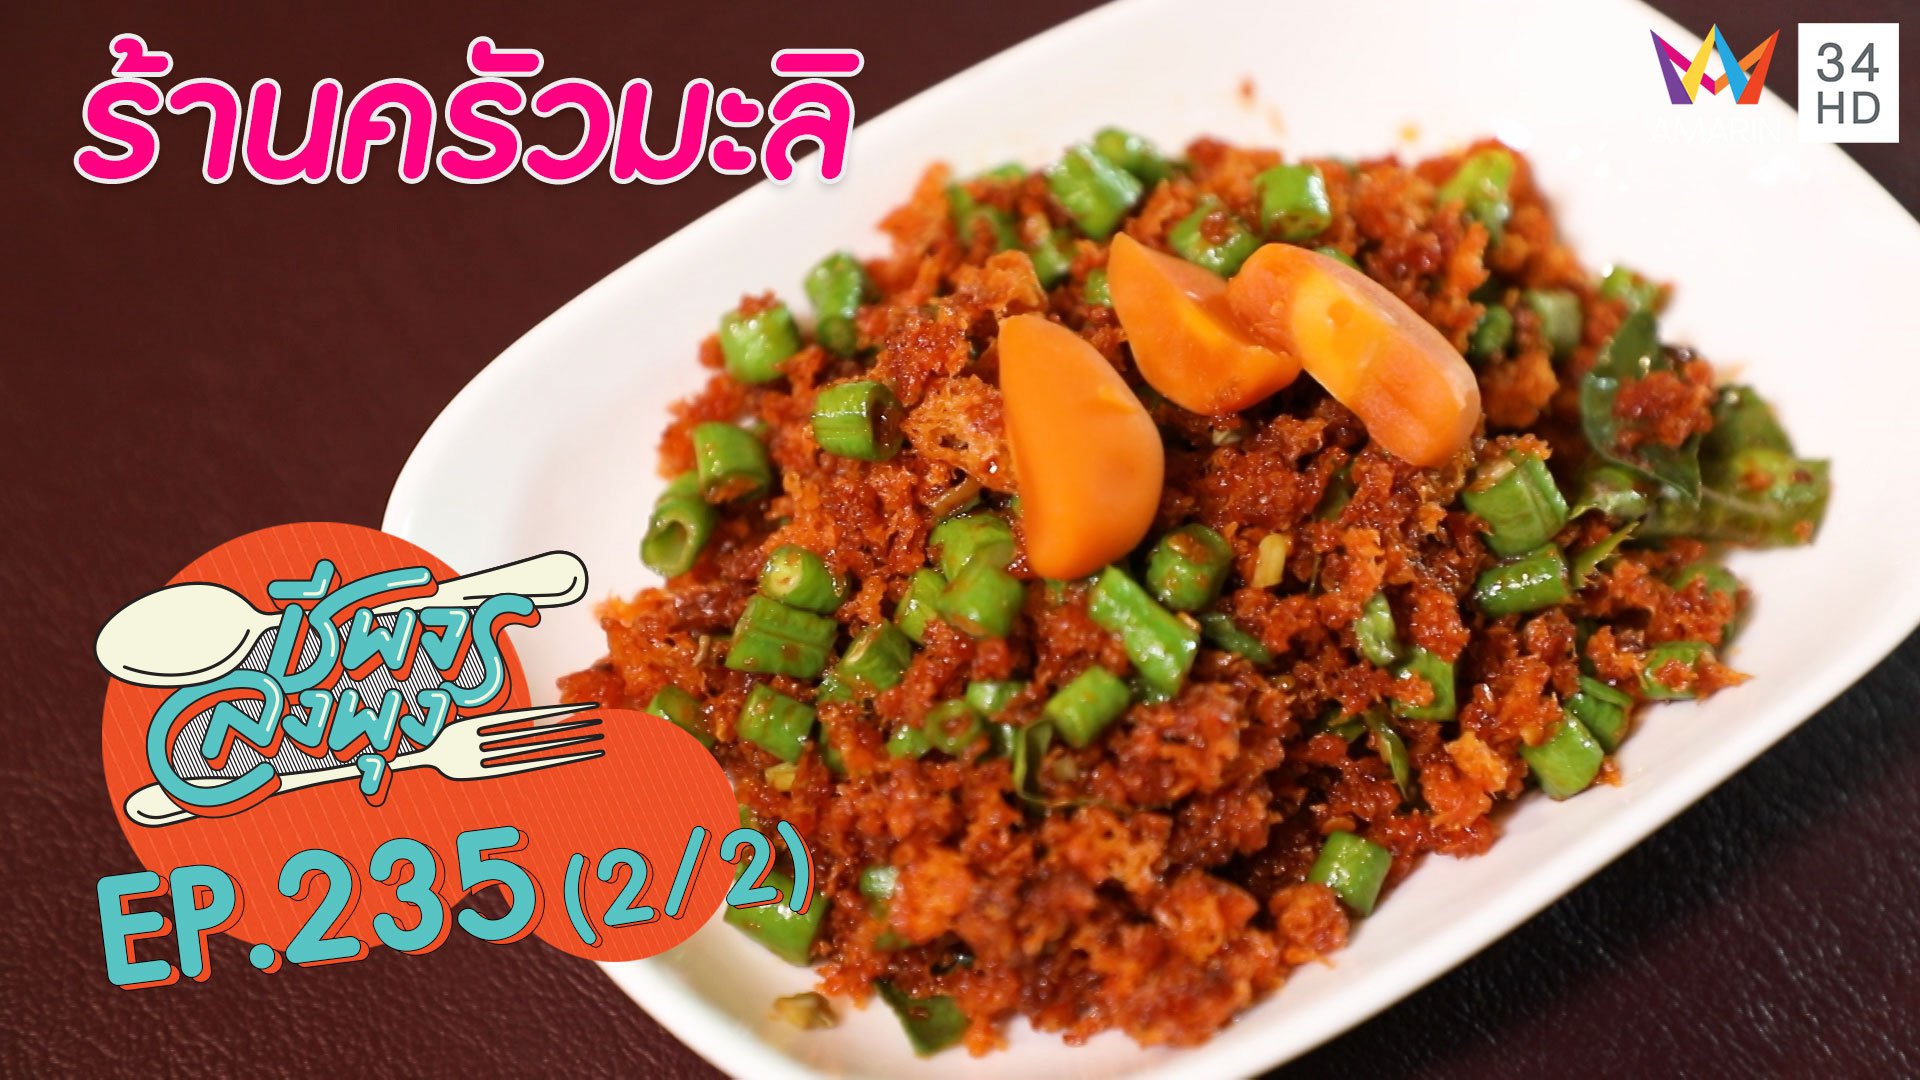 ลิ้มรสอาหารไทยดั้งเดิม @"ร้านครัวมะลิ" | ชีพจรลงพุง | 6 ก.ย. 63 (2/2) | AMARIN TVHD34